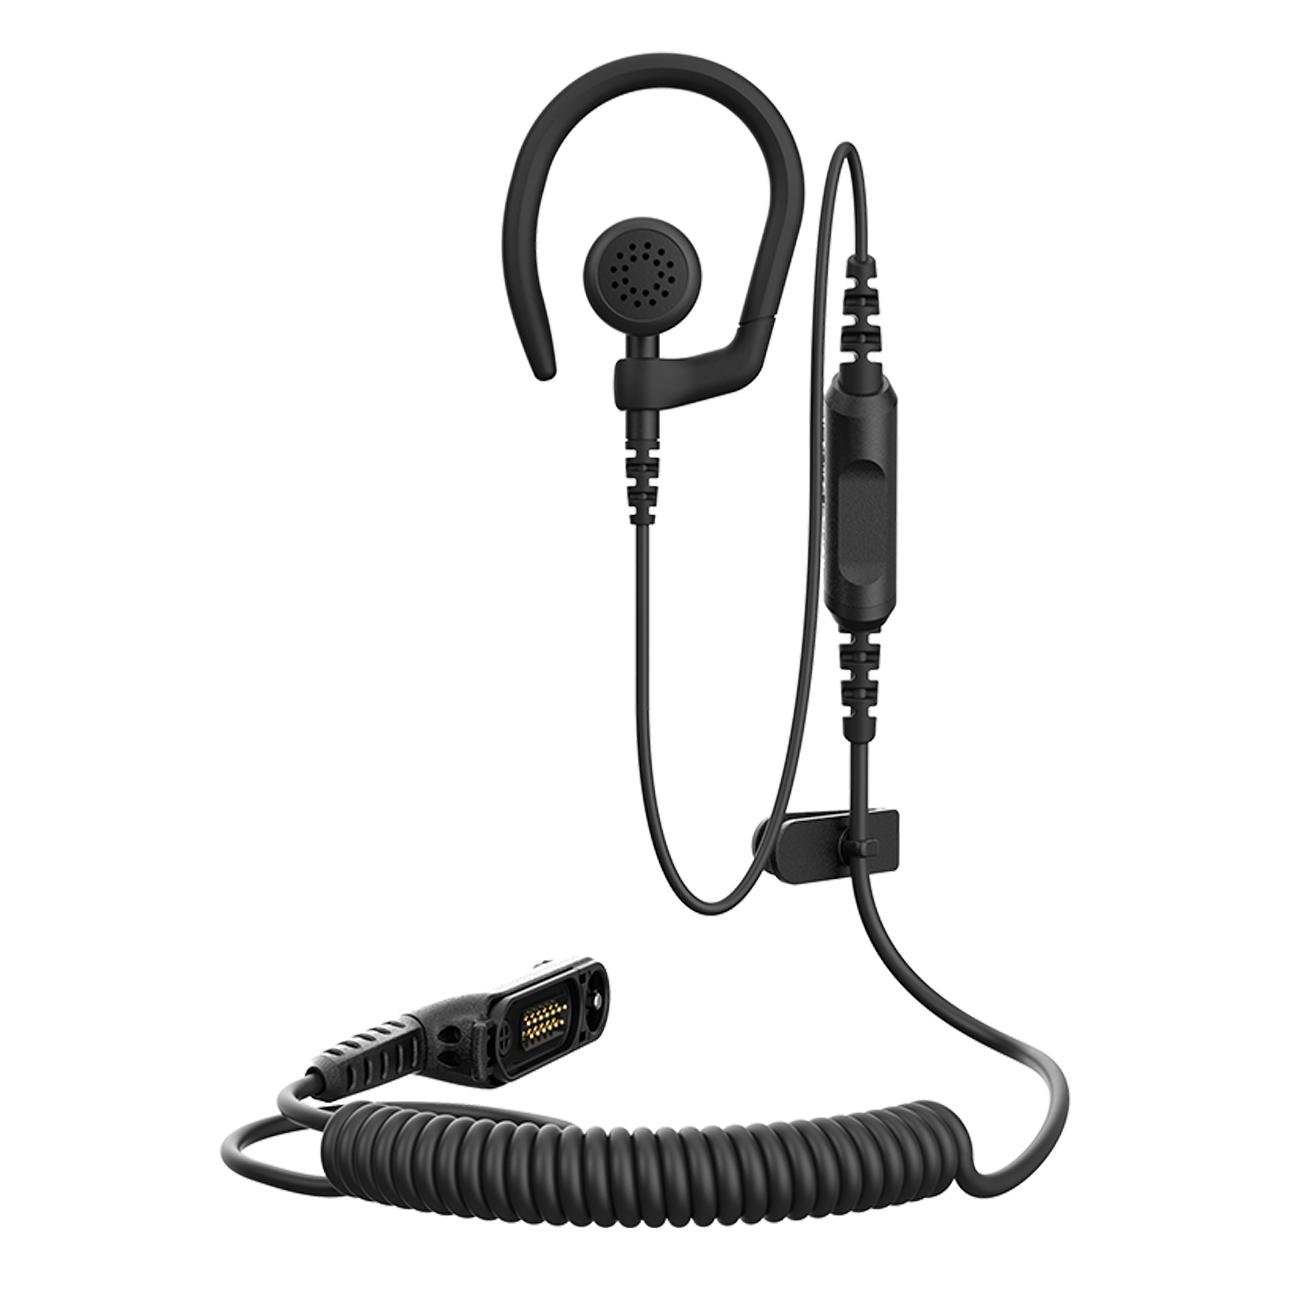 Fone de ouvido único com gancho removível (PMLN8337)